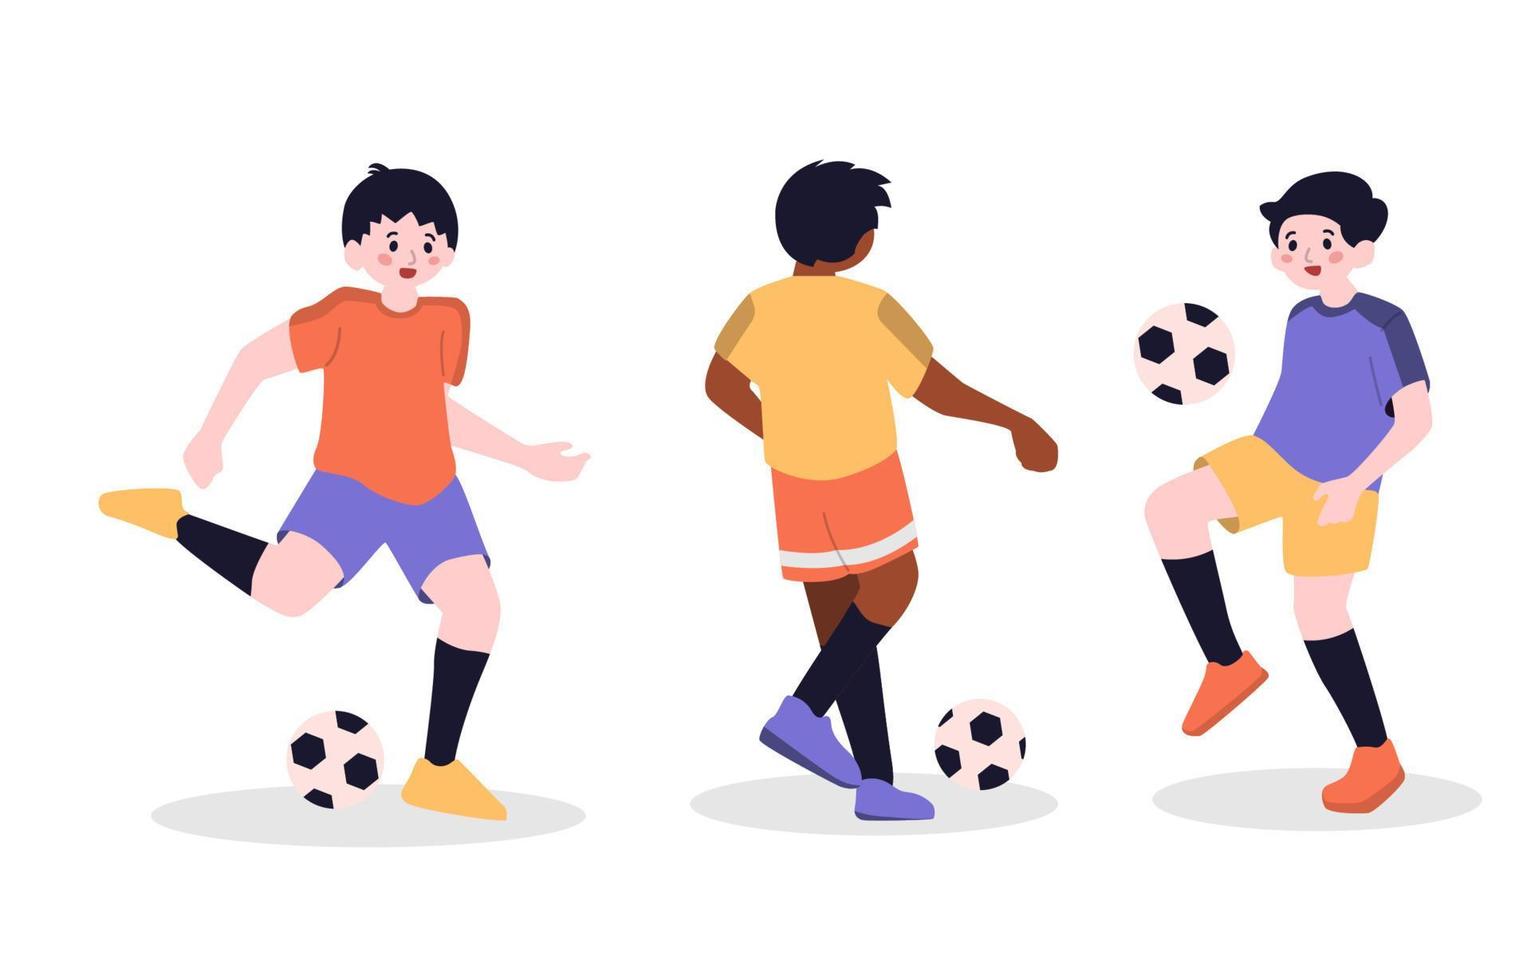 niño jugando fútbol futbolista deporte carácter aislado vector